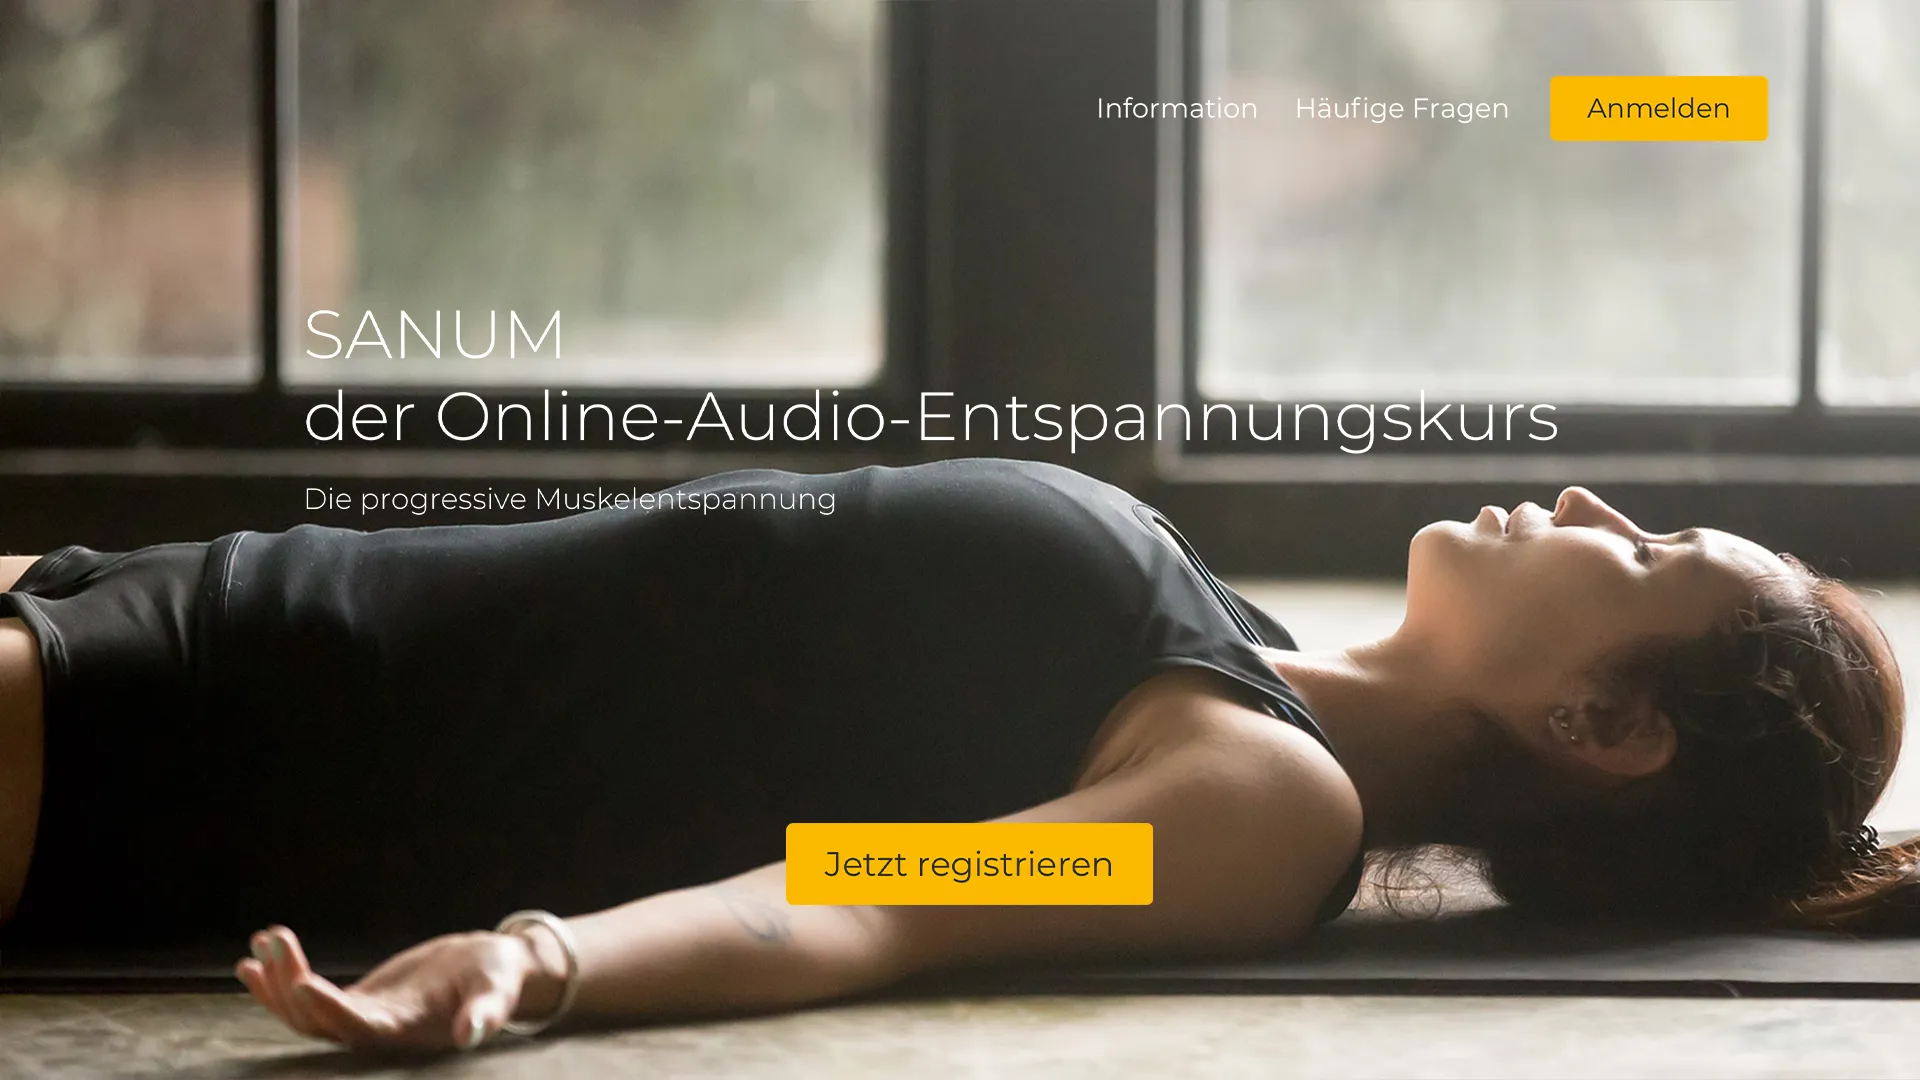 Ausschnitt der Sanum-Webseite, welche den Headerbereich zeigt und eine entspannte Frau in einer liegenden Position als Motiv hat.